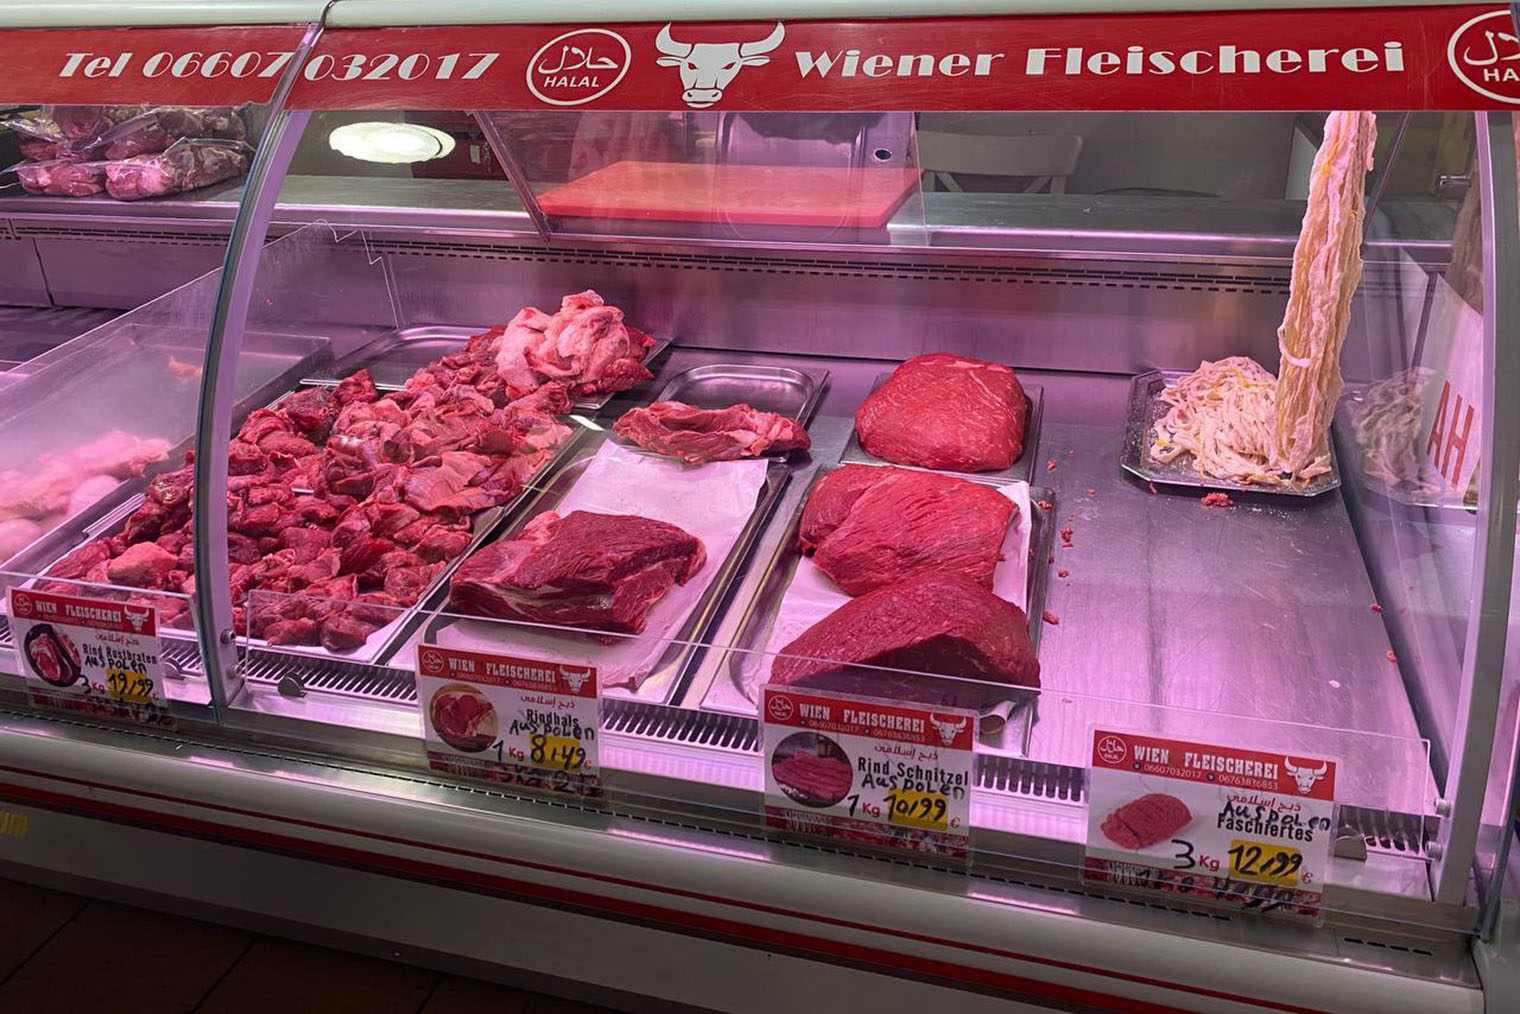 Так выглядит витрина с мясом на рынке. Говяжий шницель обойдется в 10,99 € за кг. В магазине он стоит 10,69 € за упаковку 630 г. Цена говяжьего фарша на рынке — 4,99 € за кг, а в магазине — 10,98 €